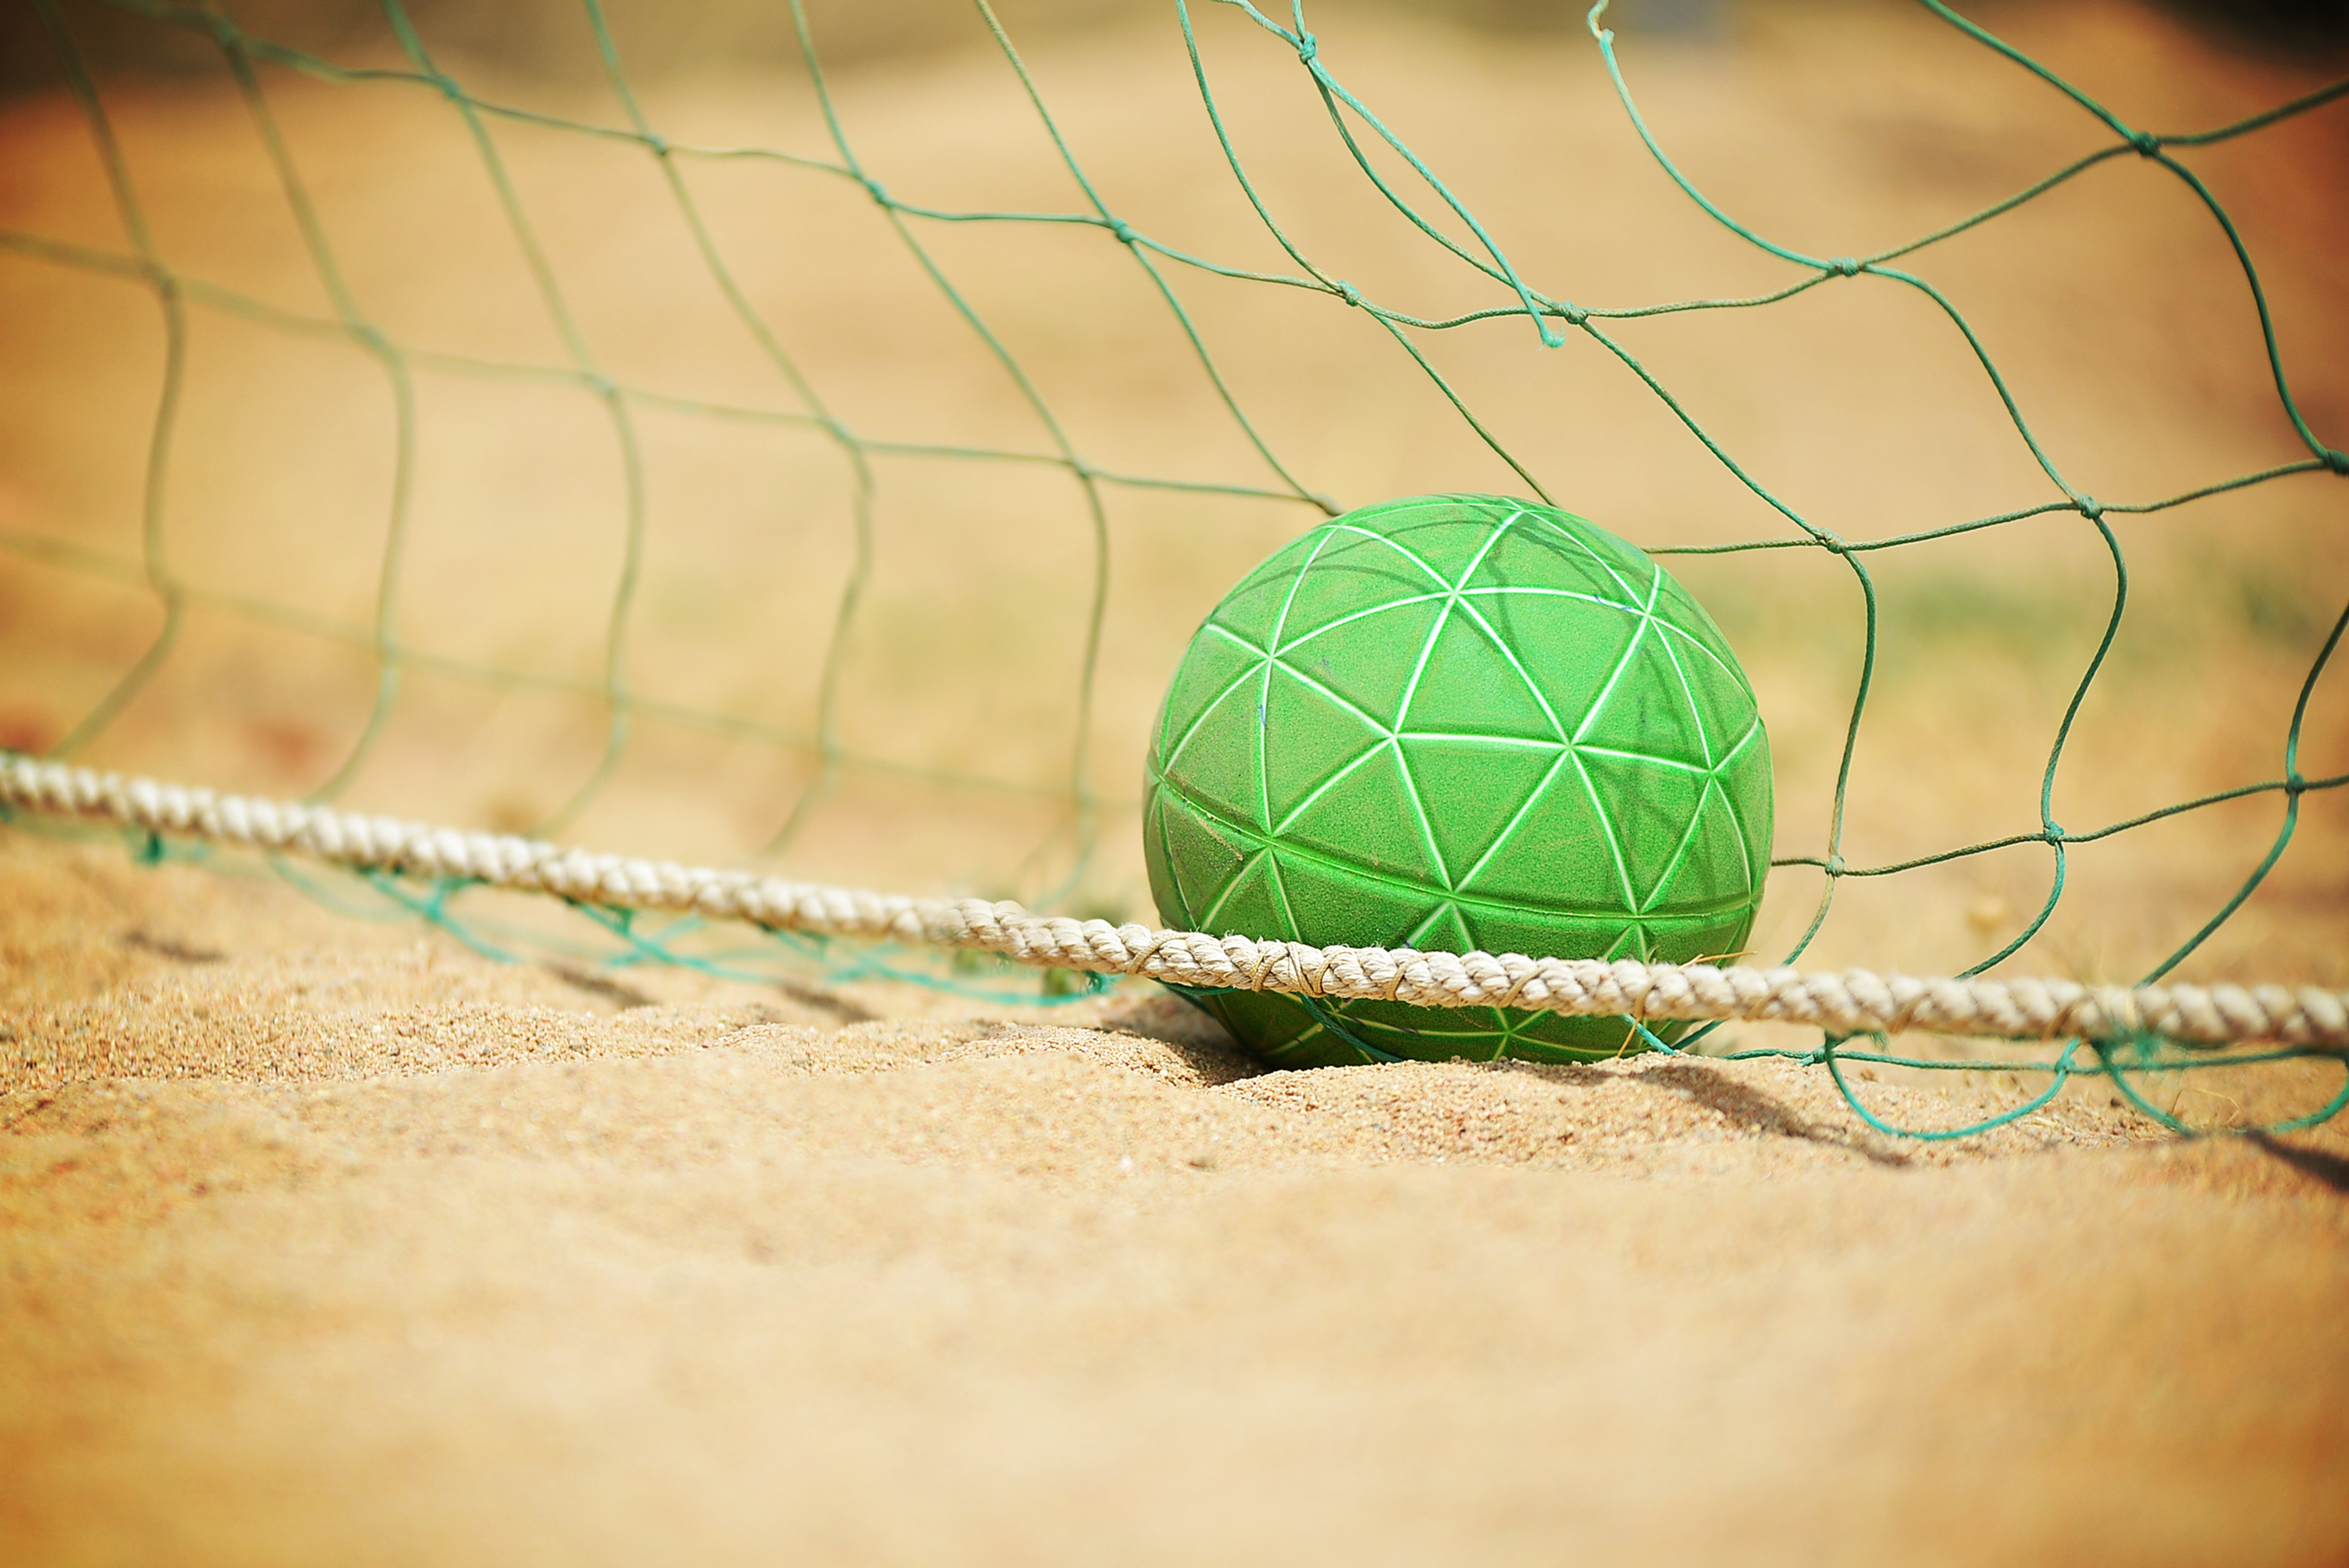 Beach handball ball and net